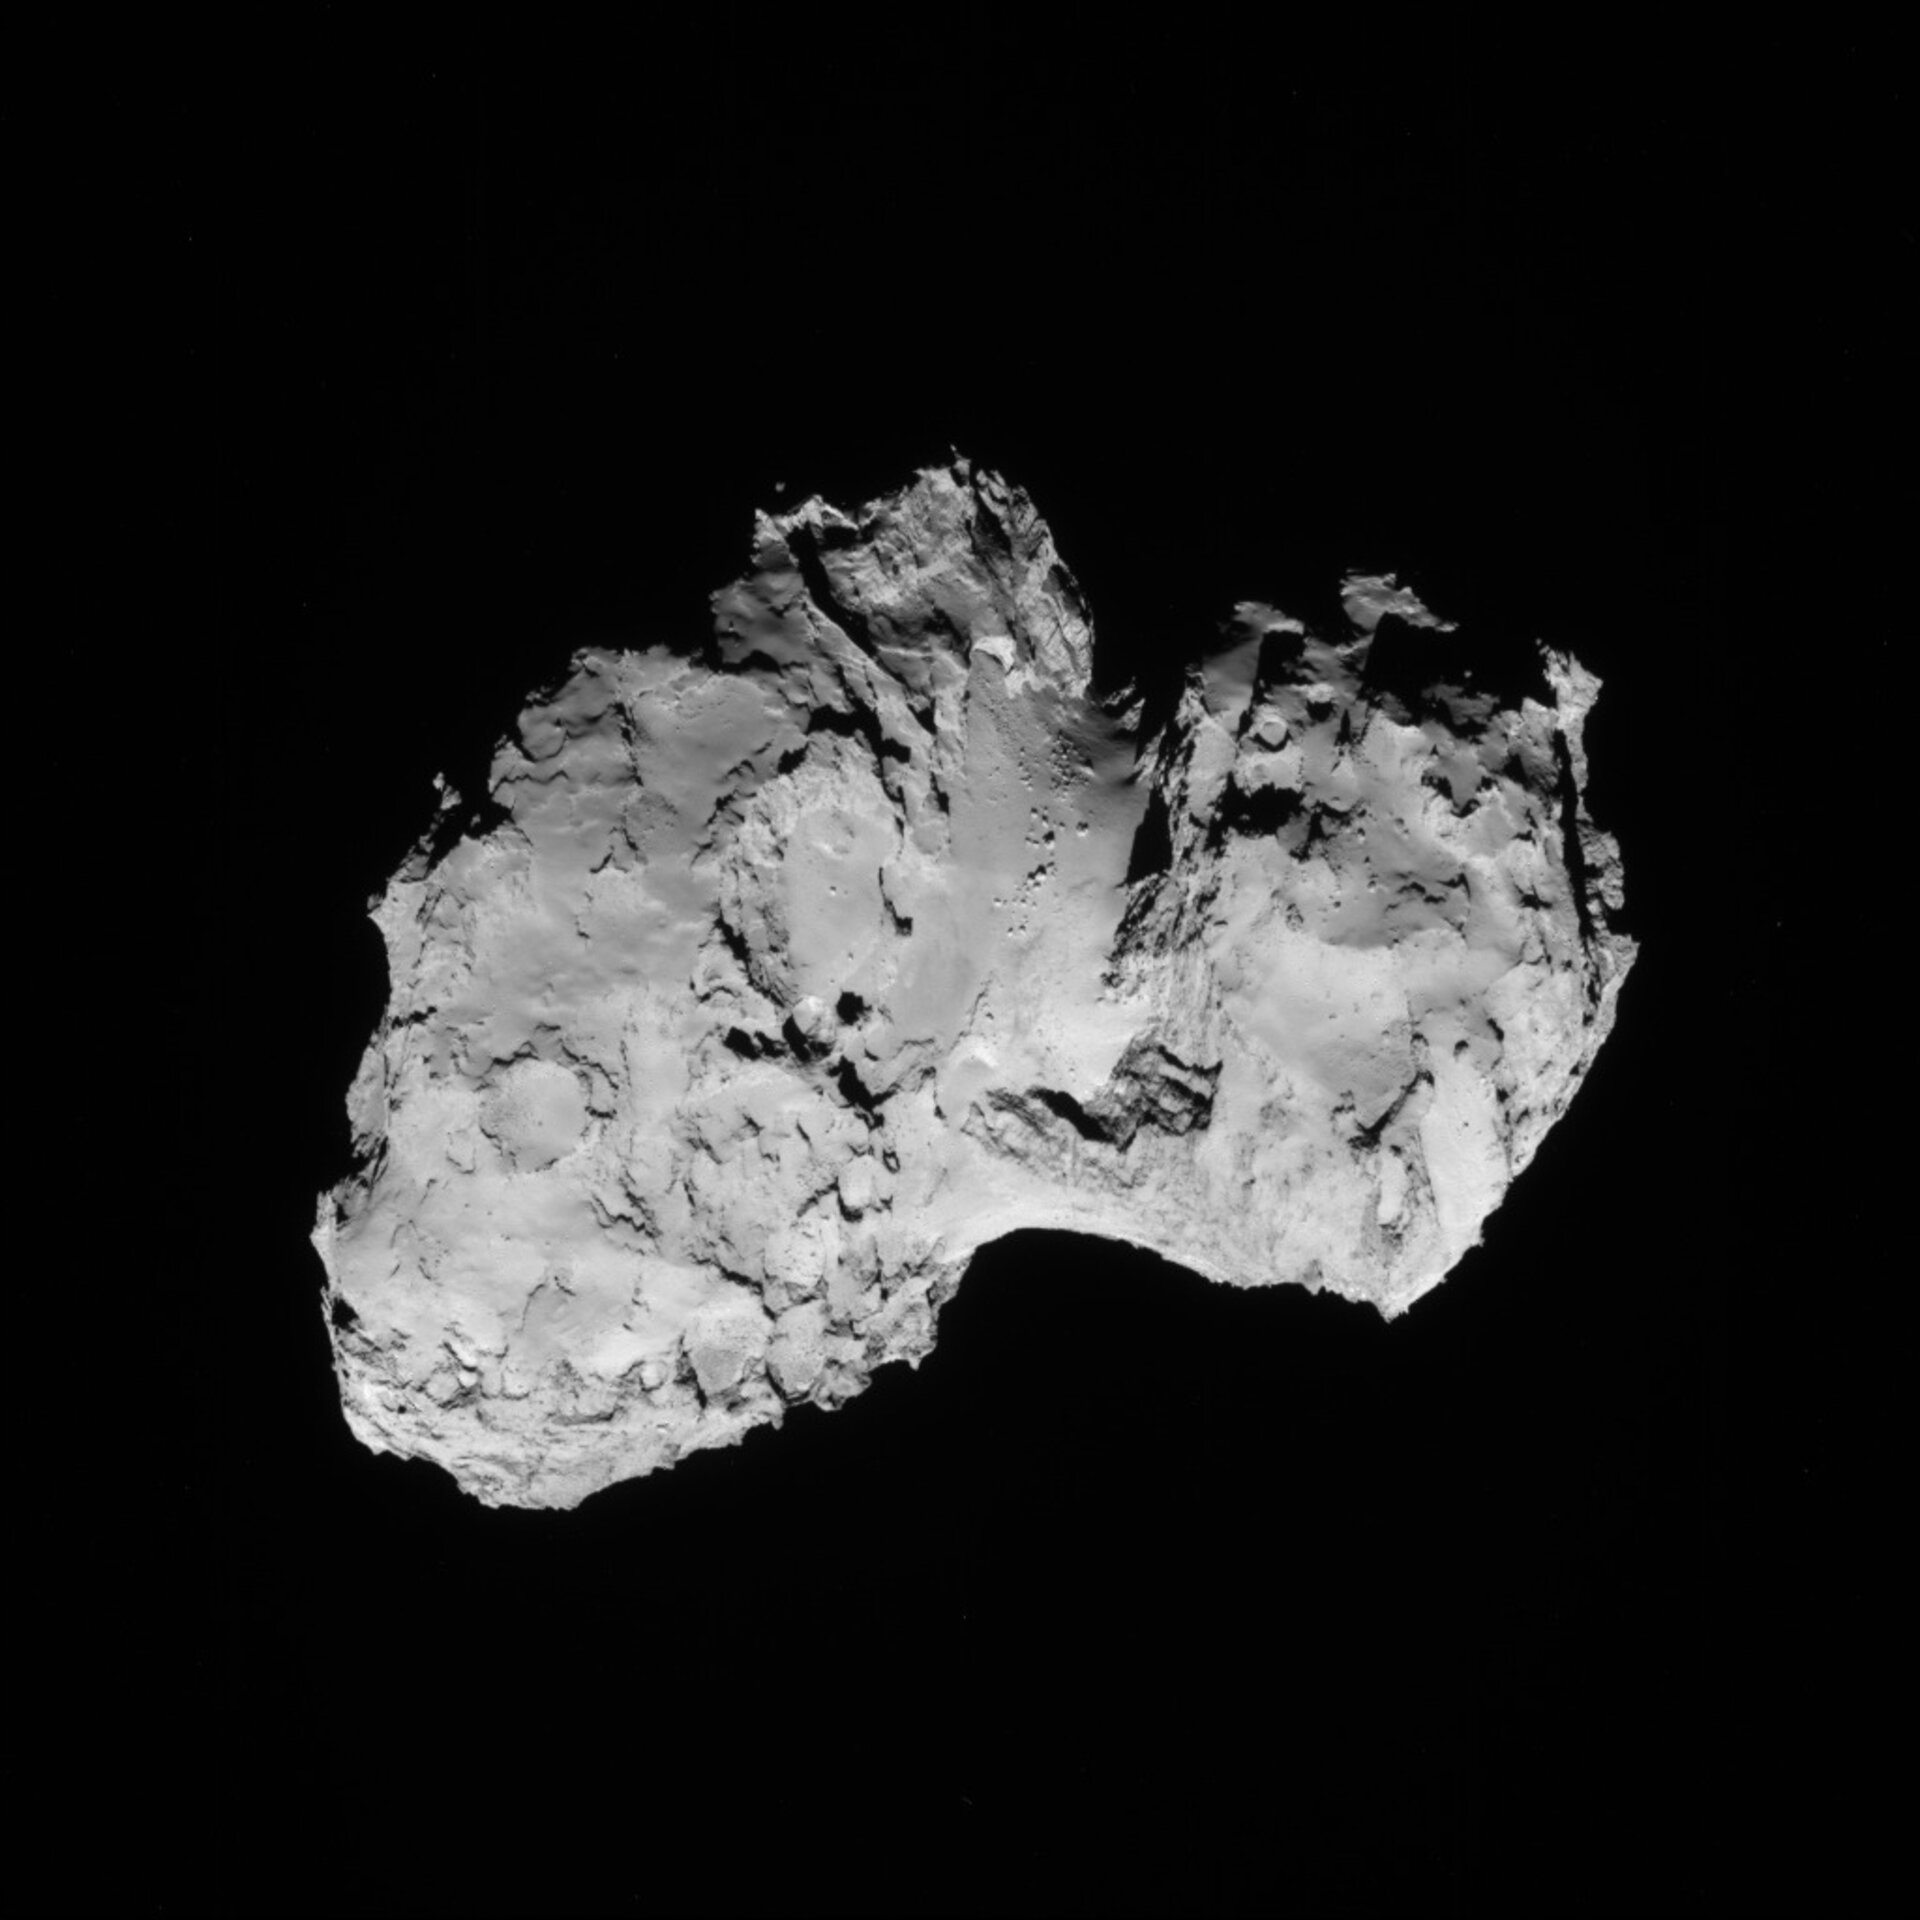 Comet on 19 August 2014 - NavCam 